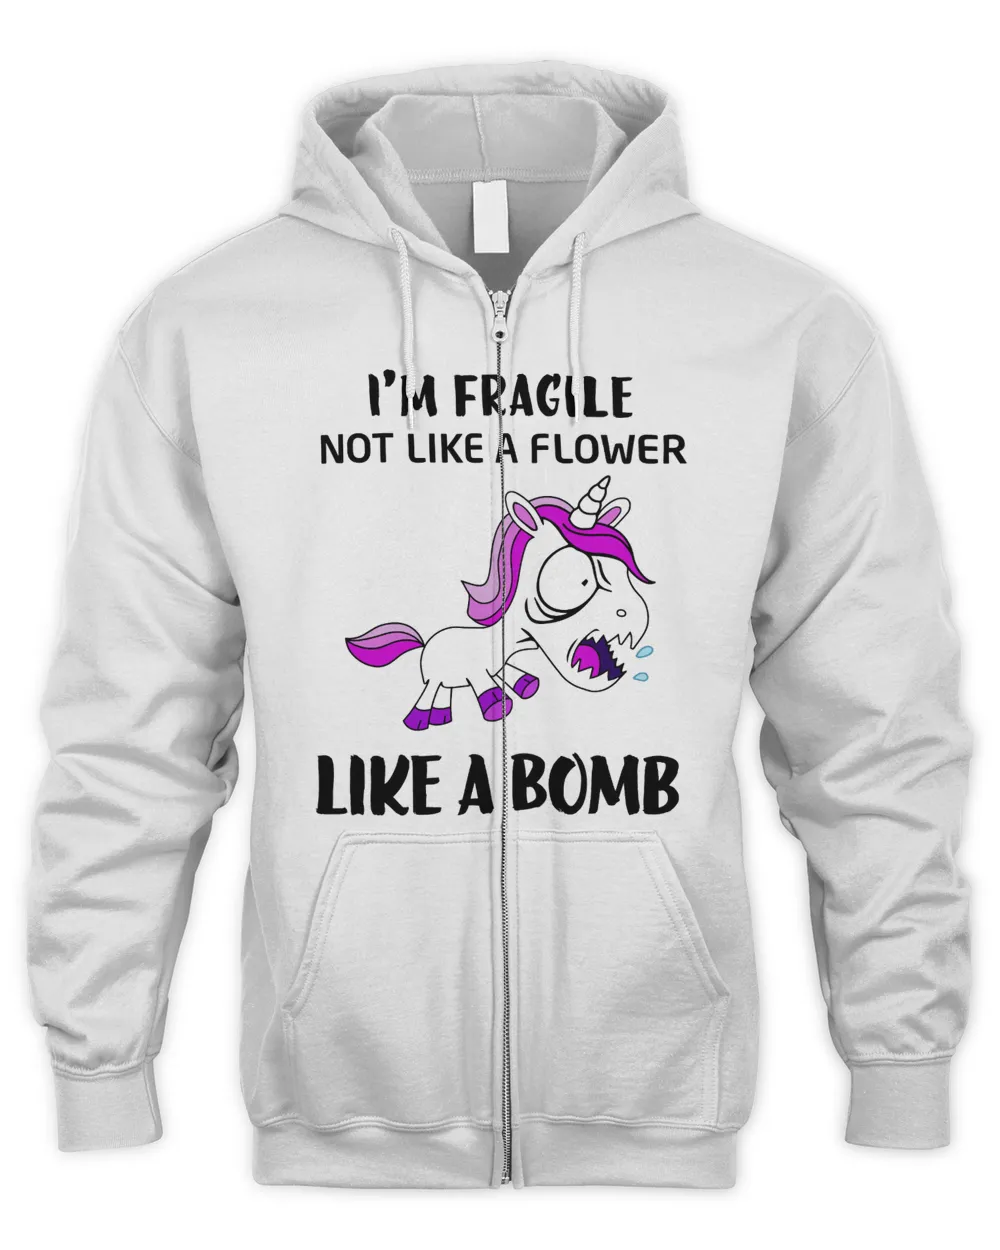 I'm fragile not like a flower